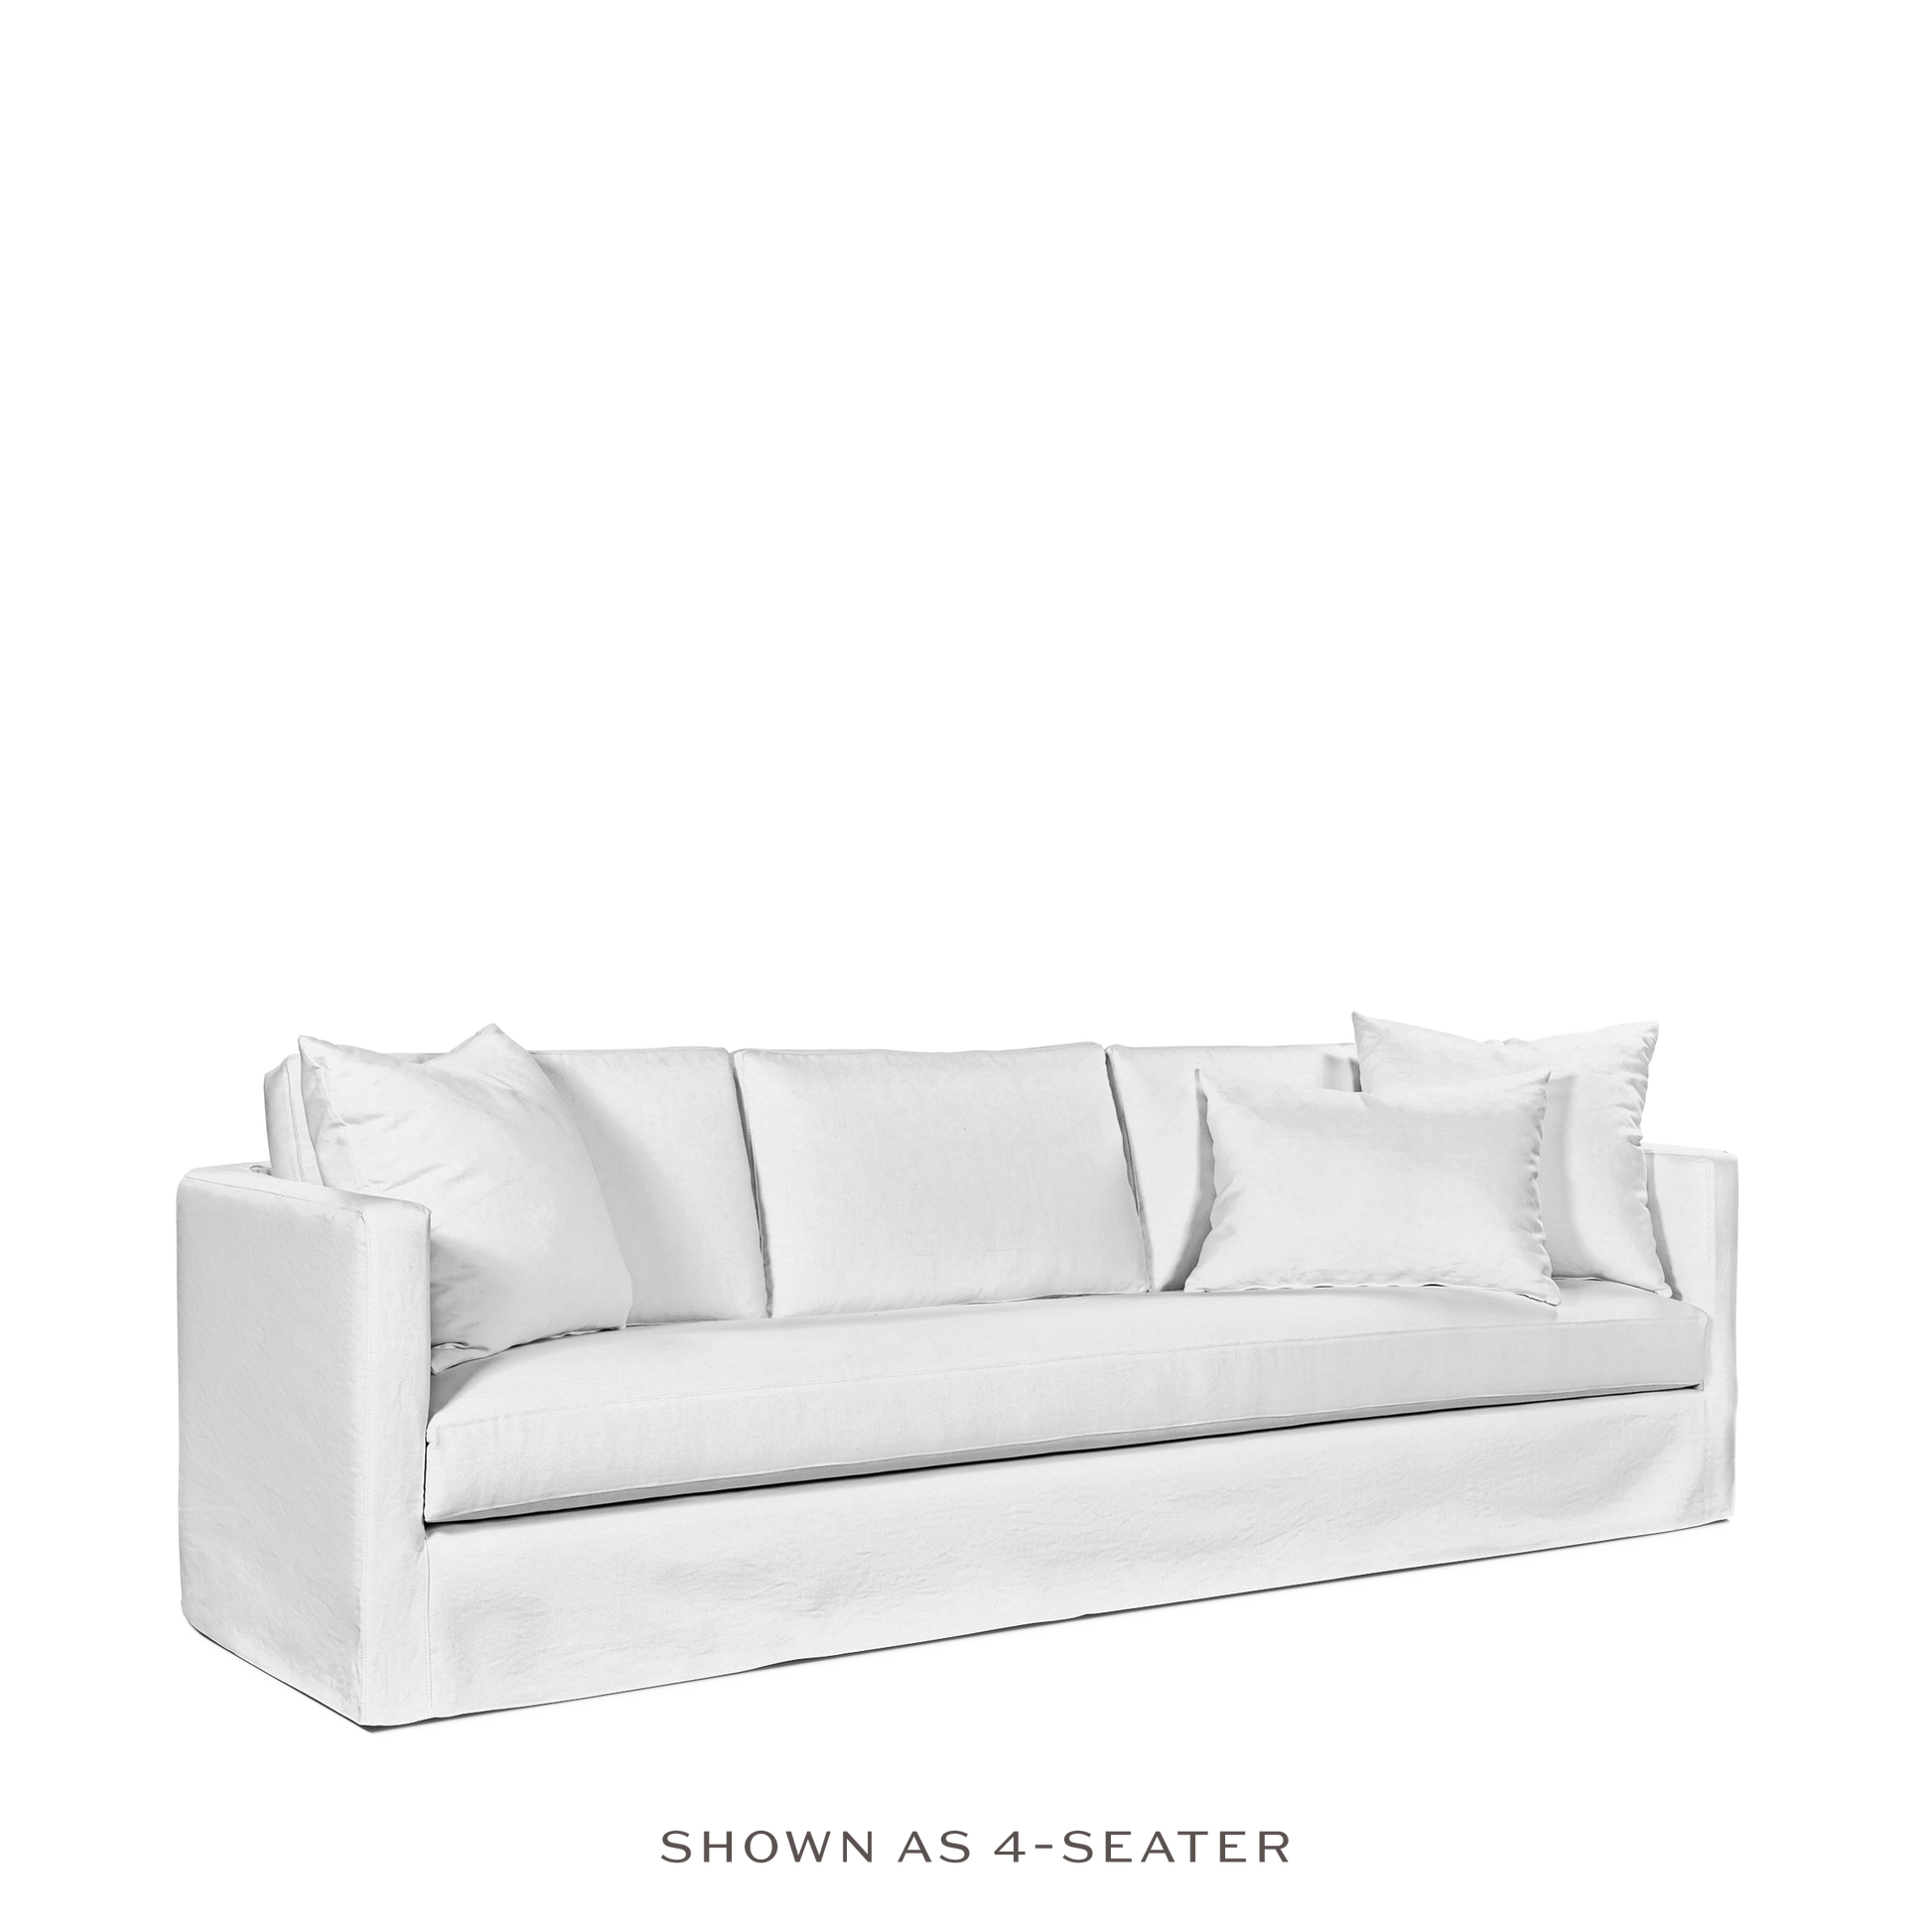 NIDO 3,5-seater sofa with linara white textile 